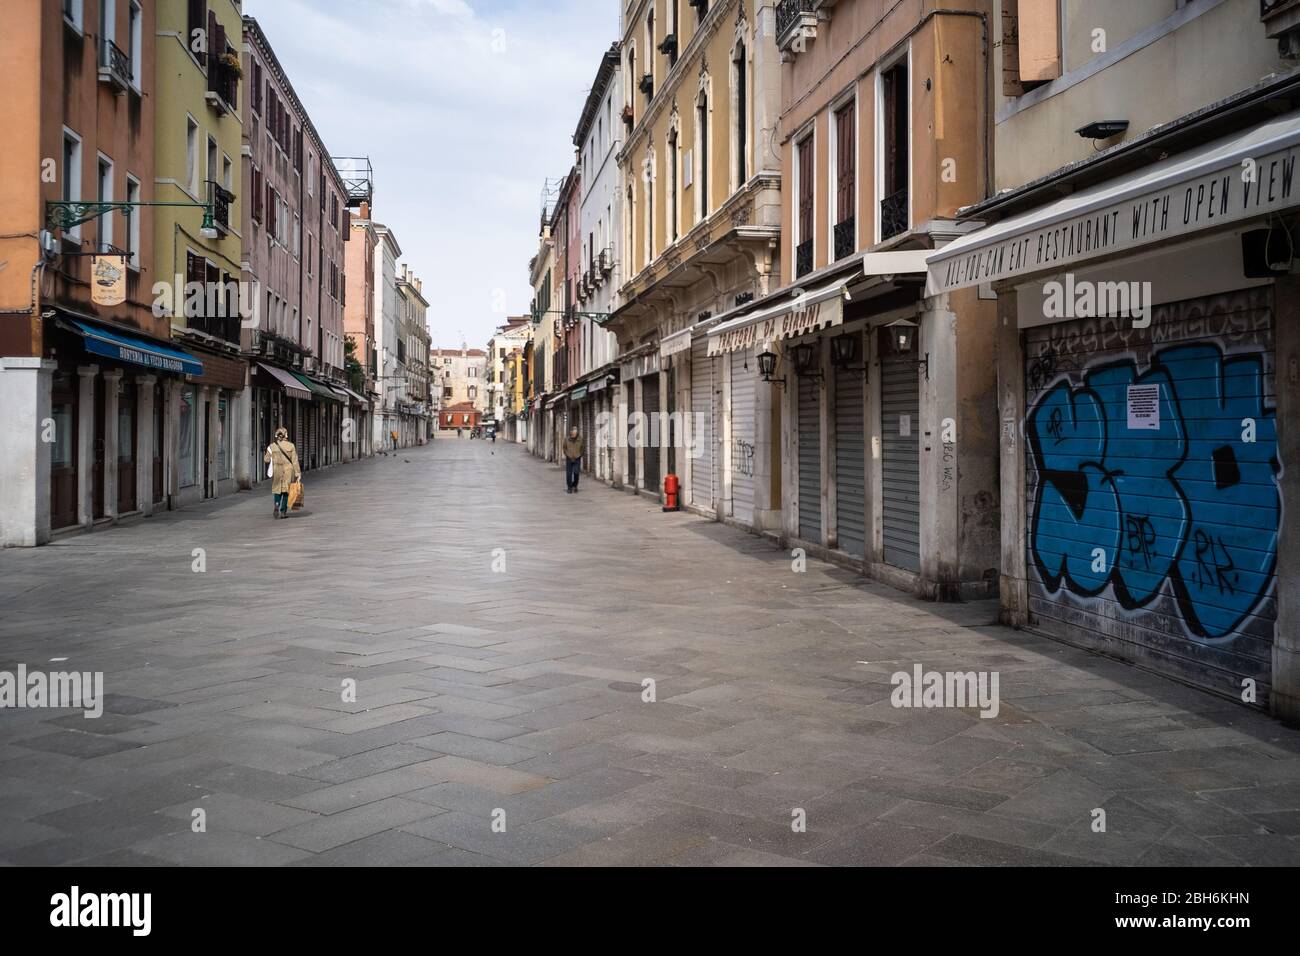 VENEZIA, ITALIA - APRILE 2020: Persone camminano in una strada vuota durante il blocco nazionale per la pandemia Covid-19. Foto Stock